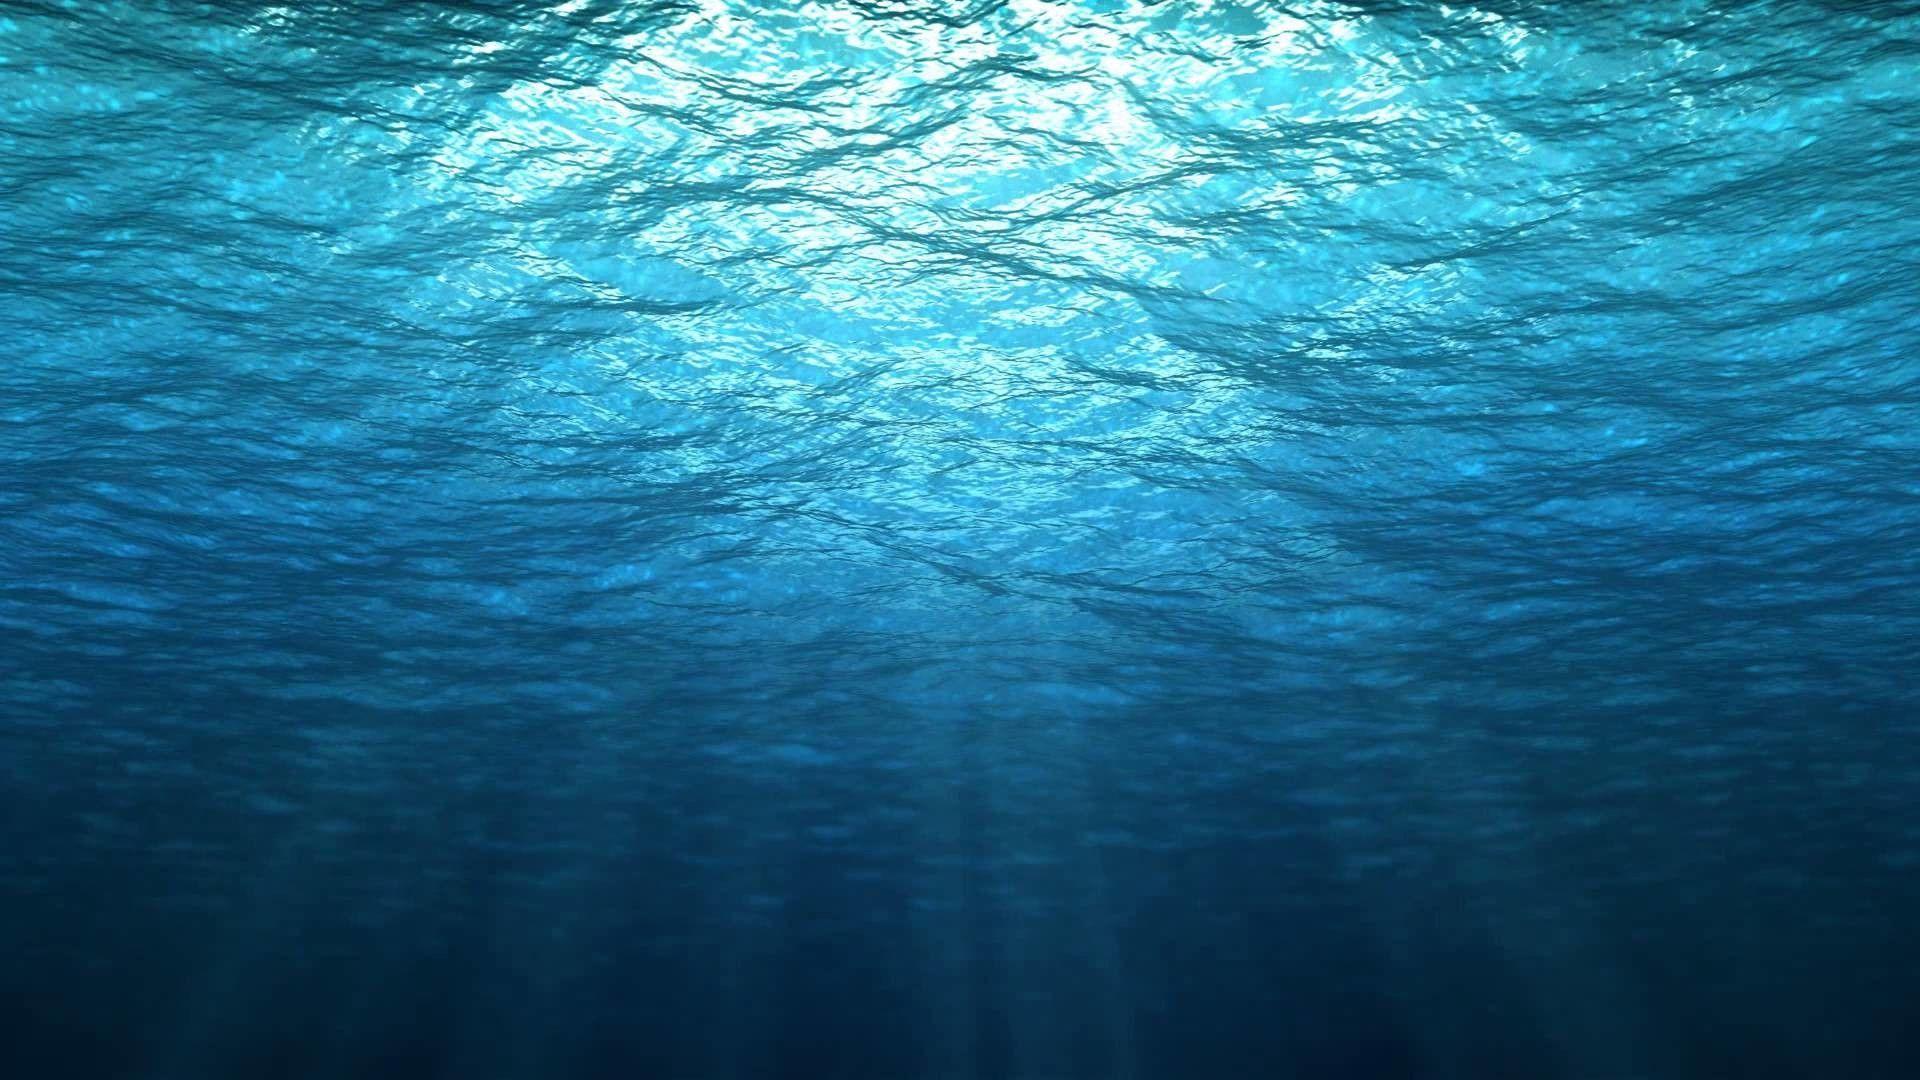 Hình nền miền dưới nước sẽ làm cho máy tính của bạn trở nên sống động và đầy màu sắc hơn bao giờ hết. Với những bức ảnh đẹp và ấn tượng được chọn lọc kỹ càng, album dưới đây sẽ mang lại cho bạn những giây phút thư giãn và tận hưởng vẻ đẹp của đại dương mỗi khi mở máy tính.